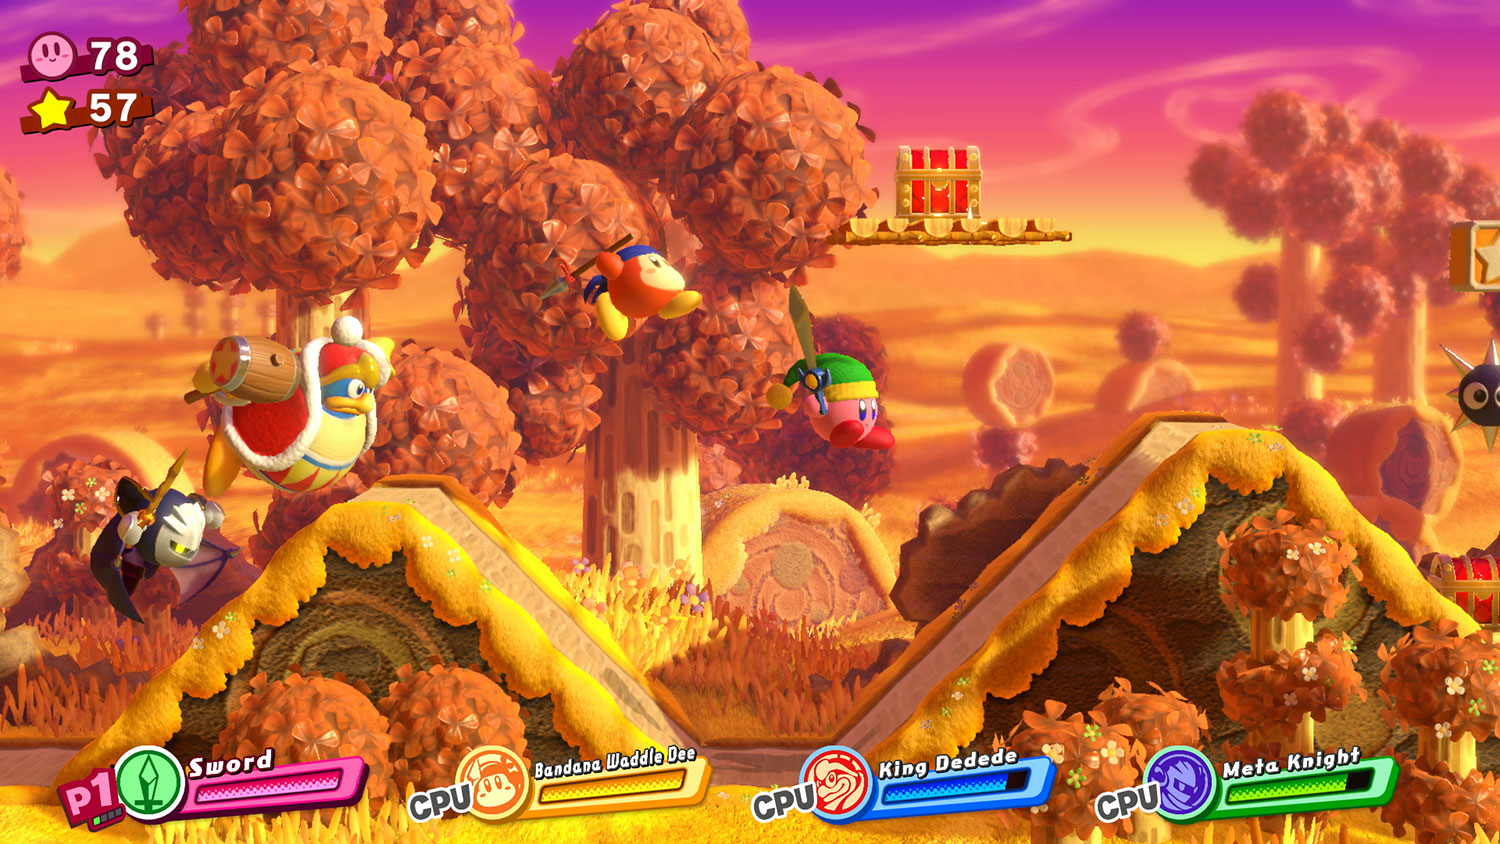 Nếu bạn là một fan của trò chơi Kirby Star Allies thì đừng bỏ lỡ cơ hội để đánh giá sản phẩm này. Với hình ảnh đầy màu sắc và tính năng đa dạng, đảm bảo sẽ làm bạn mãn nhãn và hài lòng với trò chơi này.